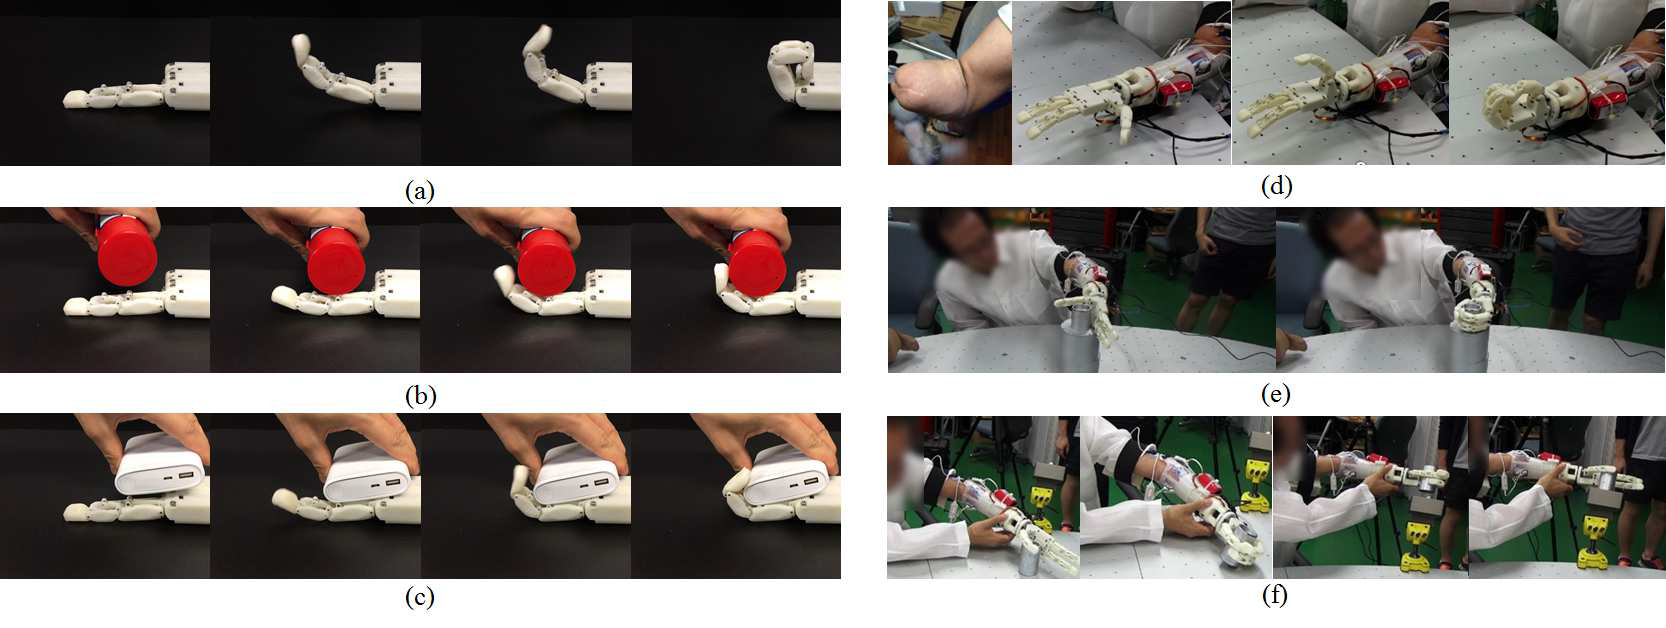 동기가 집적된 로봇 손가락과 핸드 의수 동작 테스트; (a-c) 손가락 동작 실험, (d-f) 핸드 의수 동작 실험